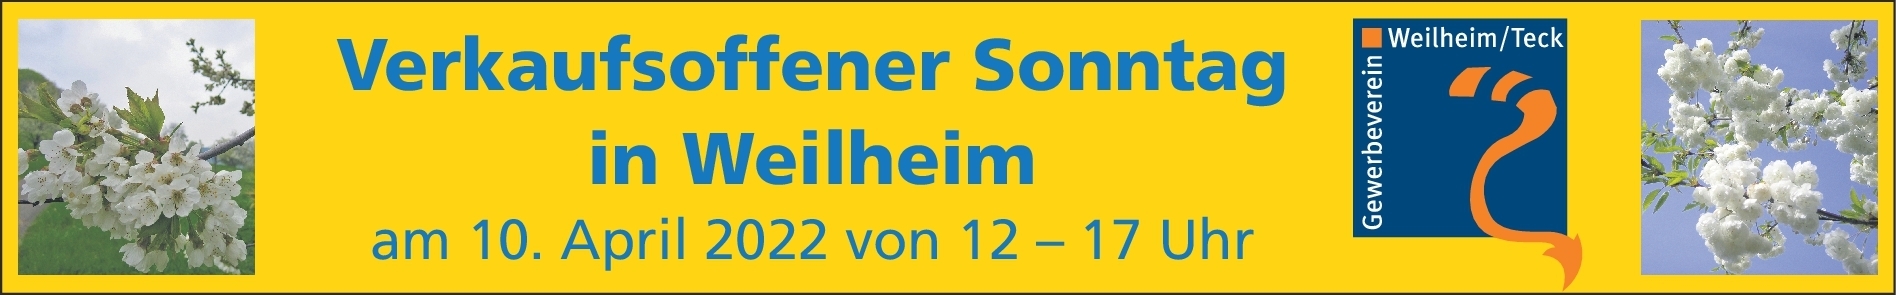 VOS - Weilheim 10. April